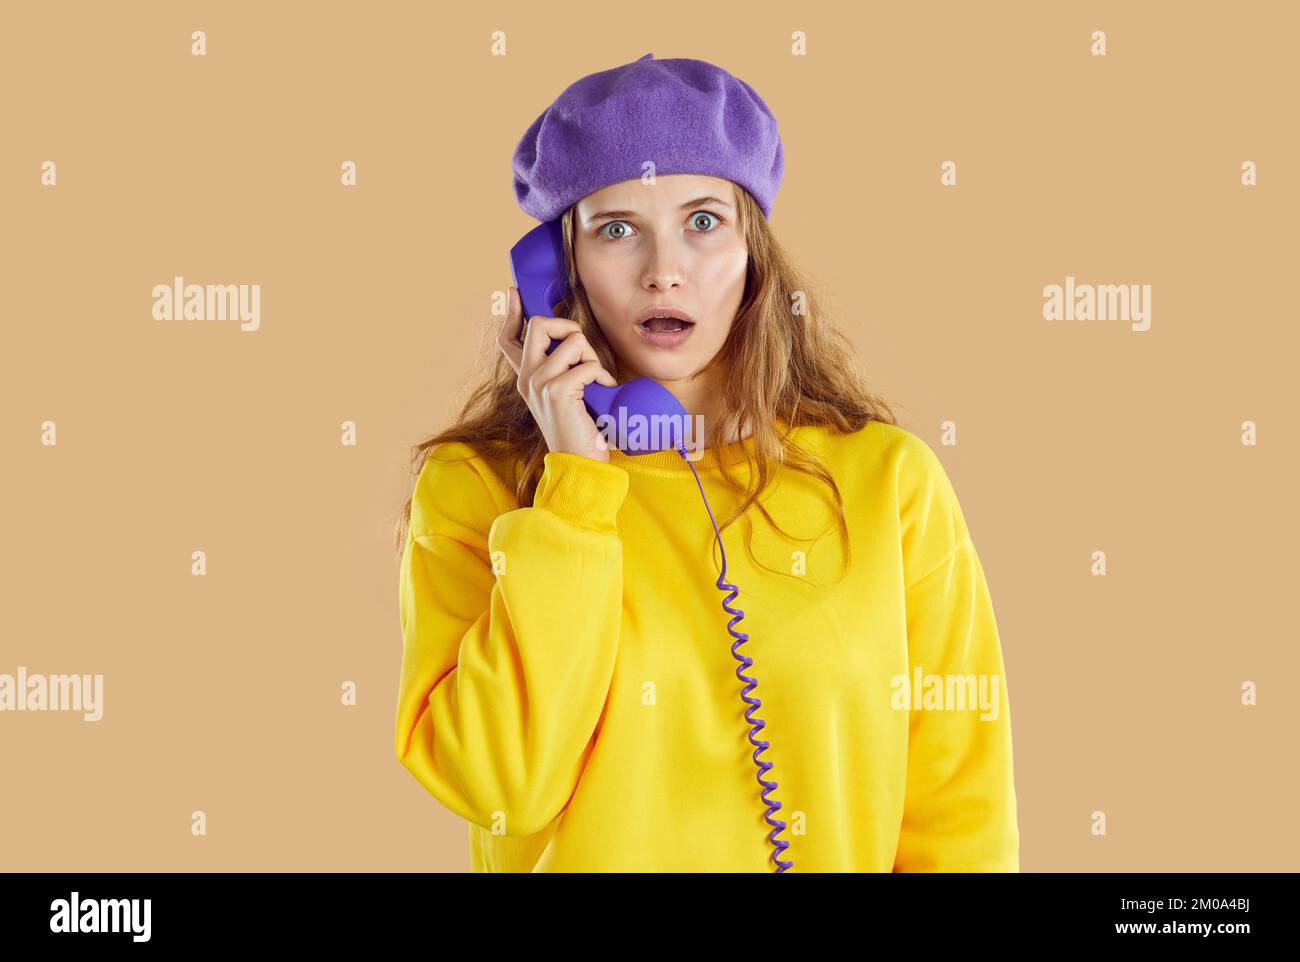 Aturdida mujer perpleja con sombrero púrpura y sudadera amarilla llamando al teléfono sobre fondo beige. Foto de stock